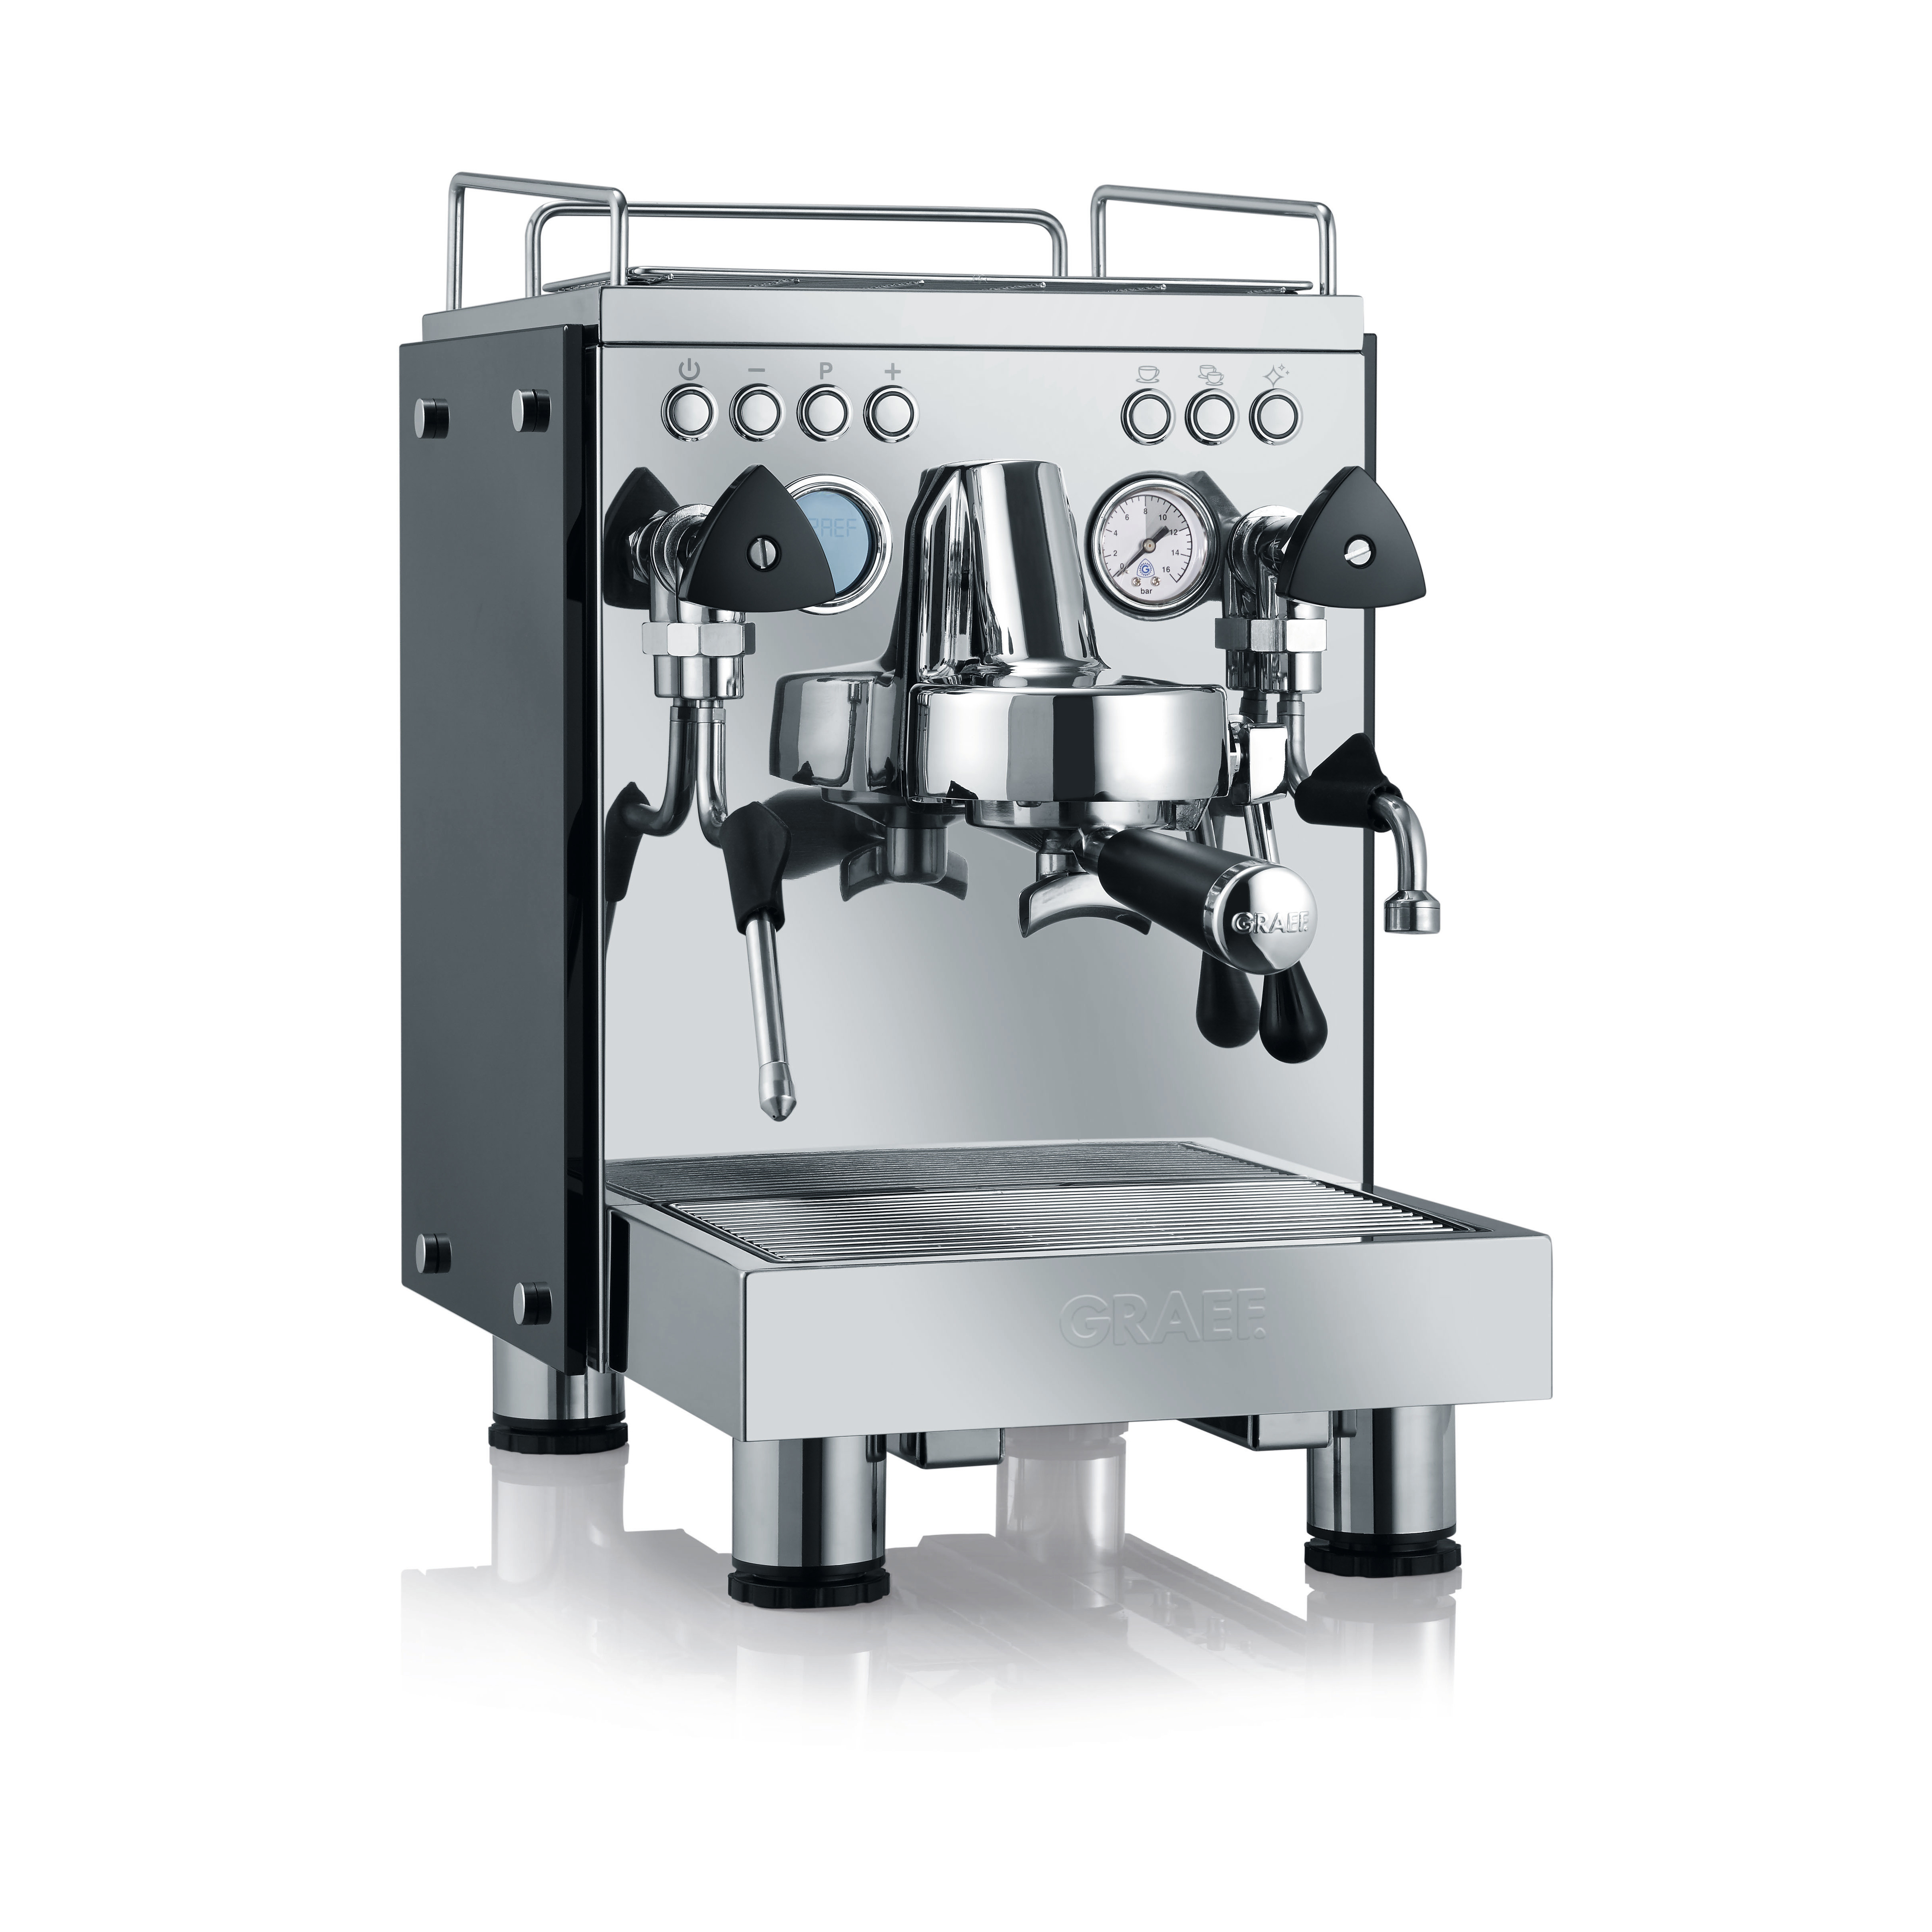 Silber Espressomaschine contessa GRAEF